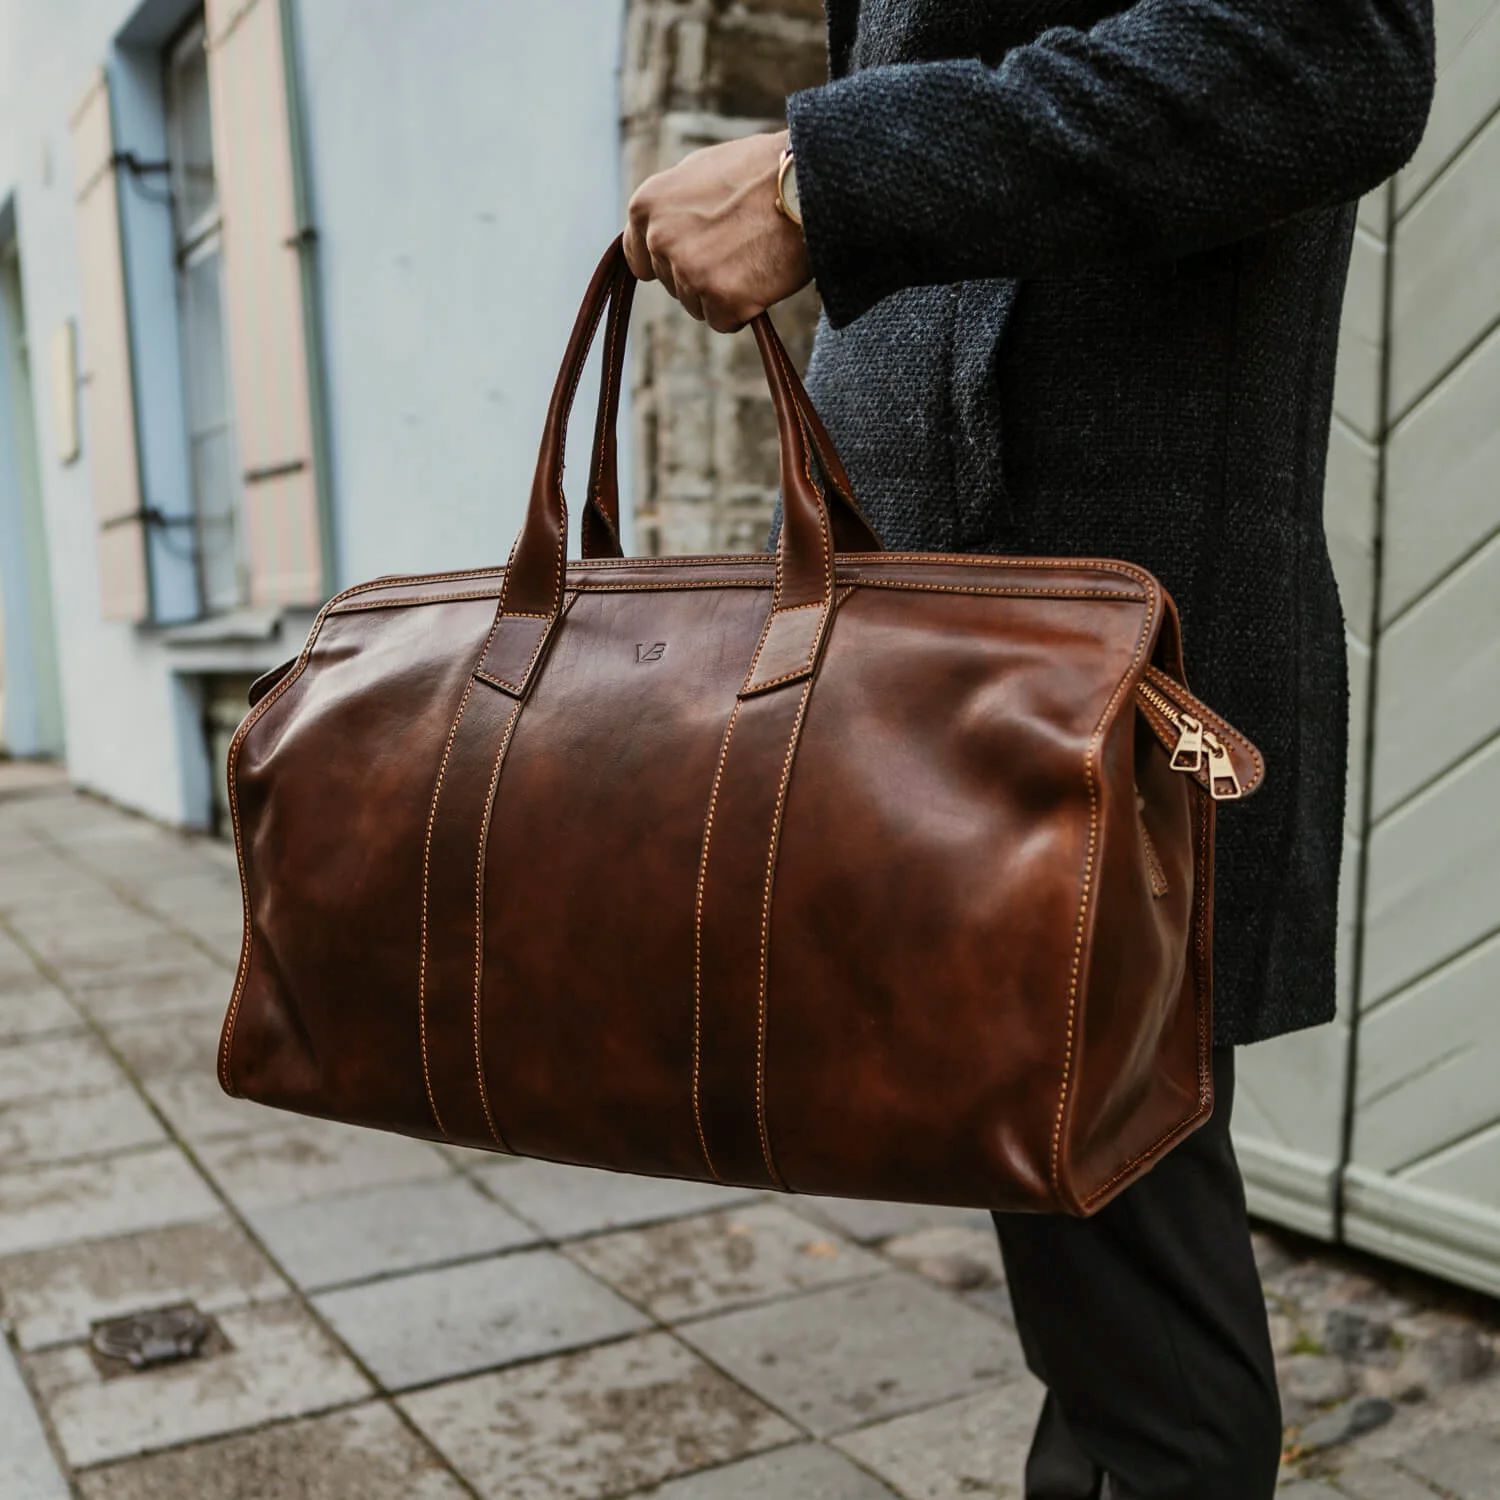 Travel Duffel Bag for Men Carryall Weekender Duffle Tote Bag Large